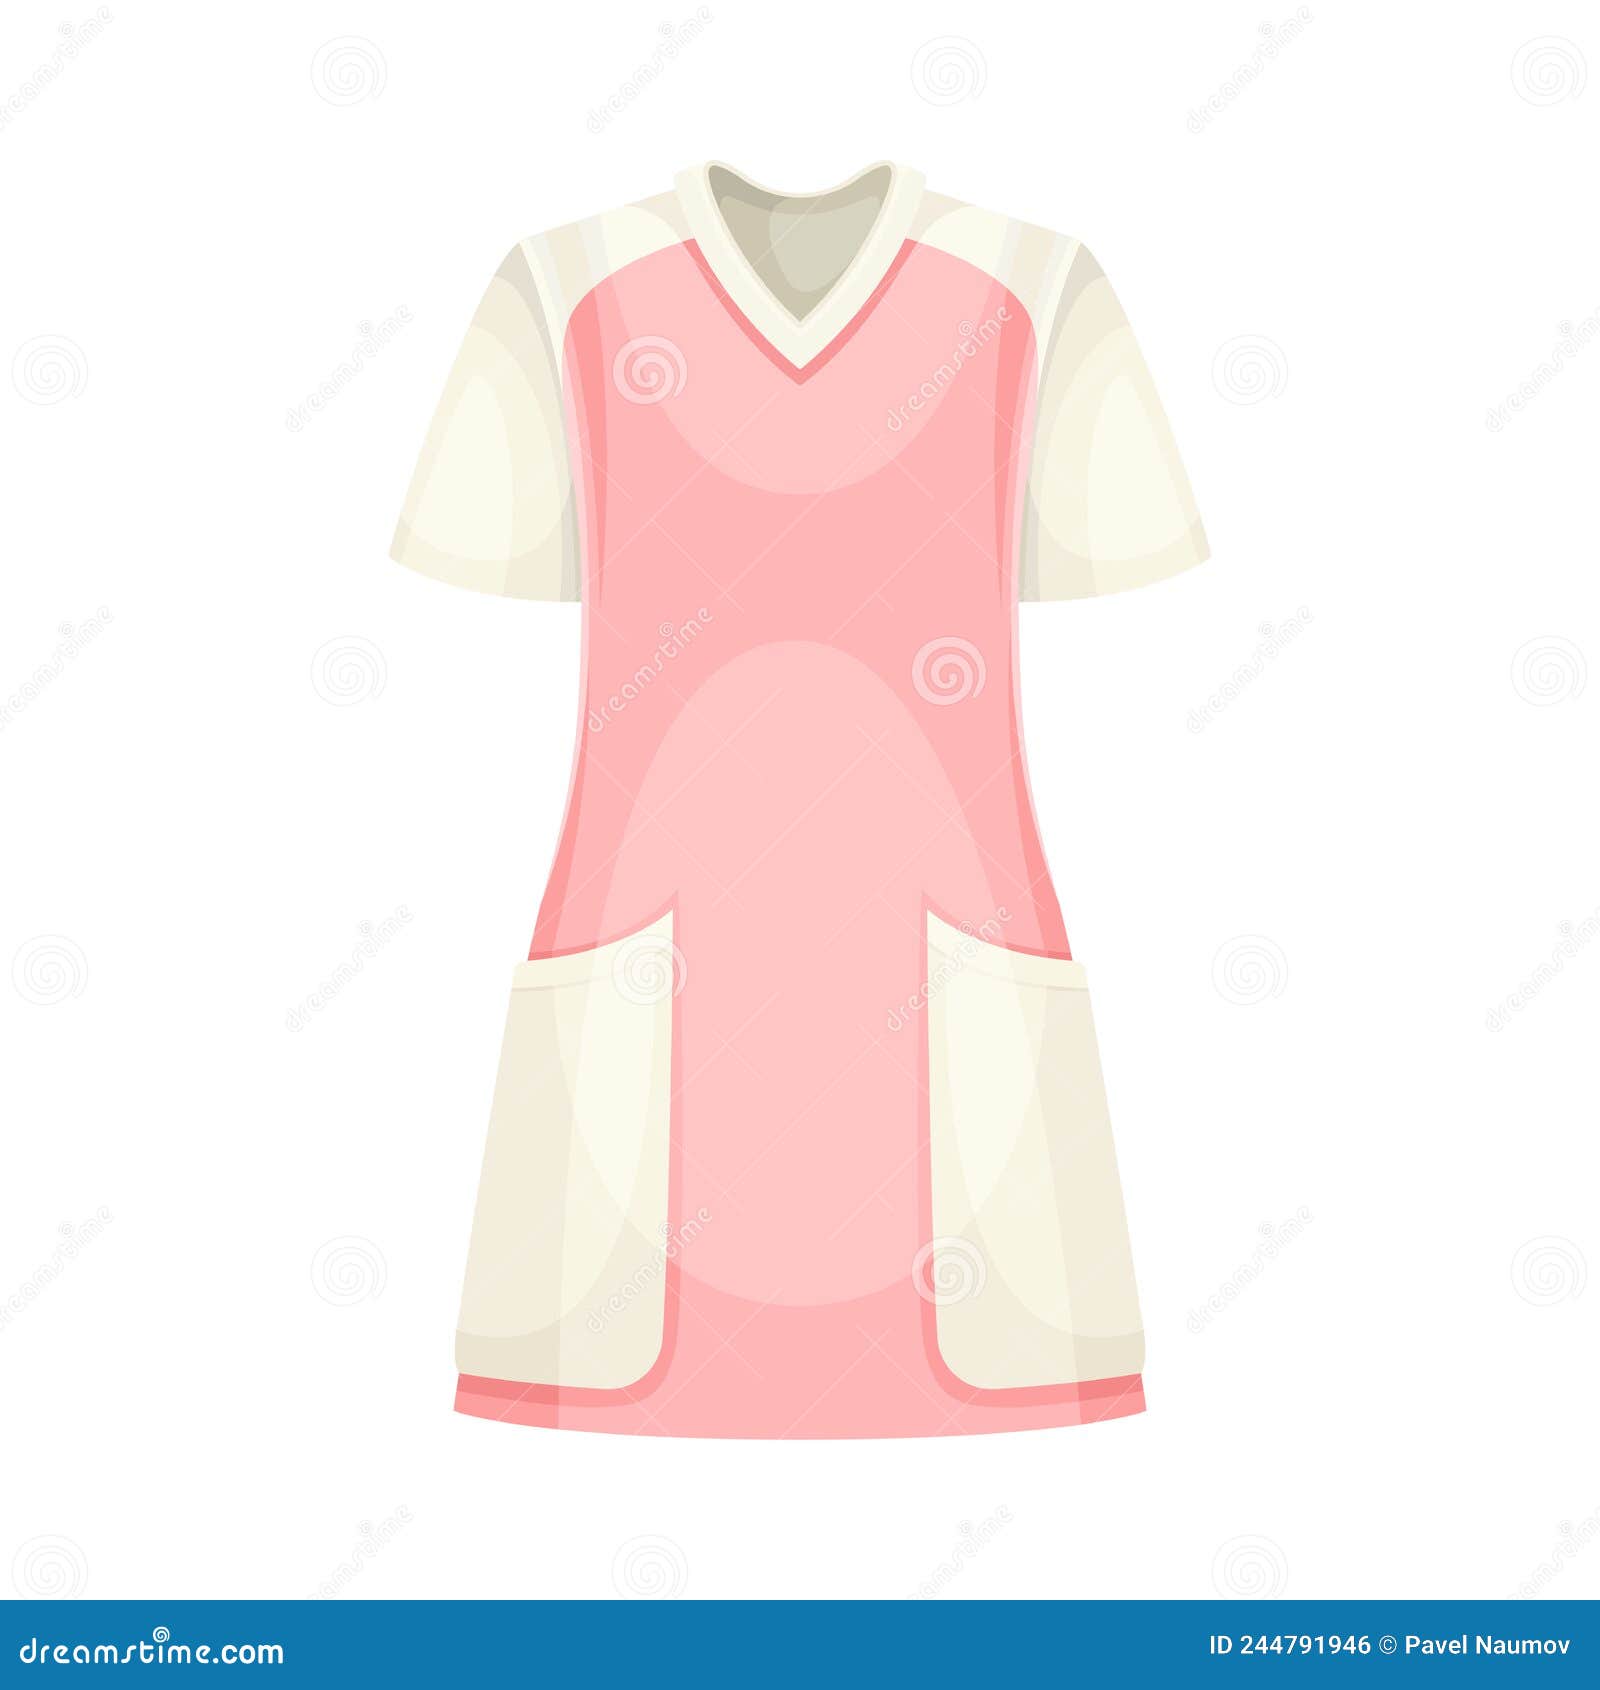 Share more than 216 hospital nurse dress latest